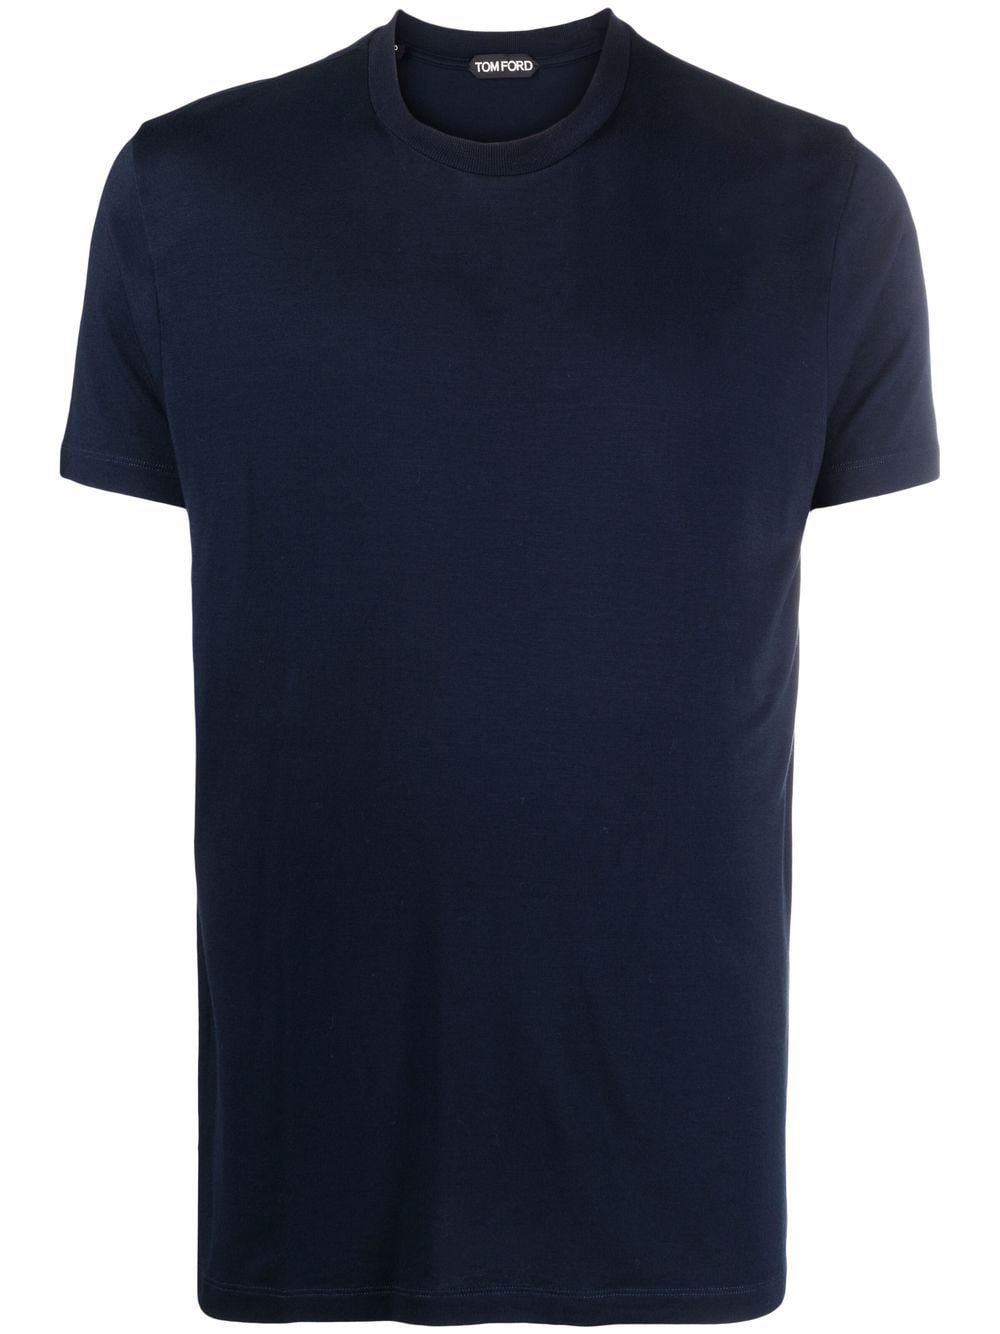 TOM FORD Short Sleeve T-Shirt Navy - MAISONDEFASHION.COM